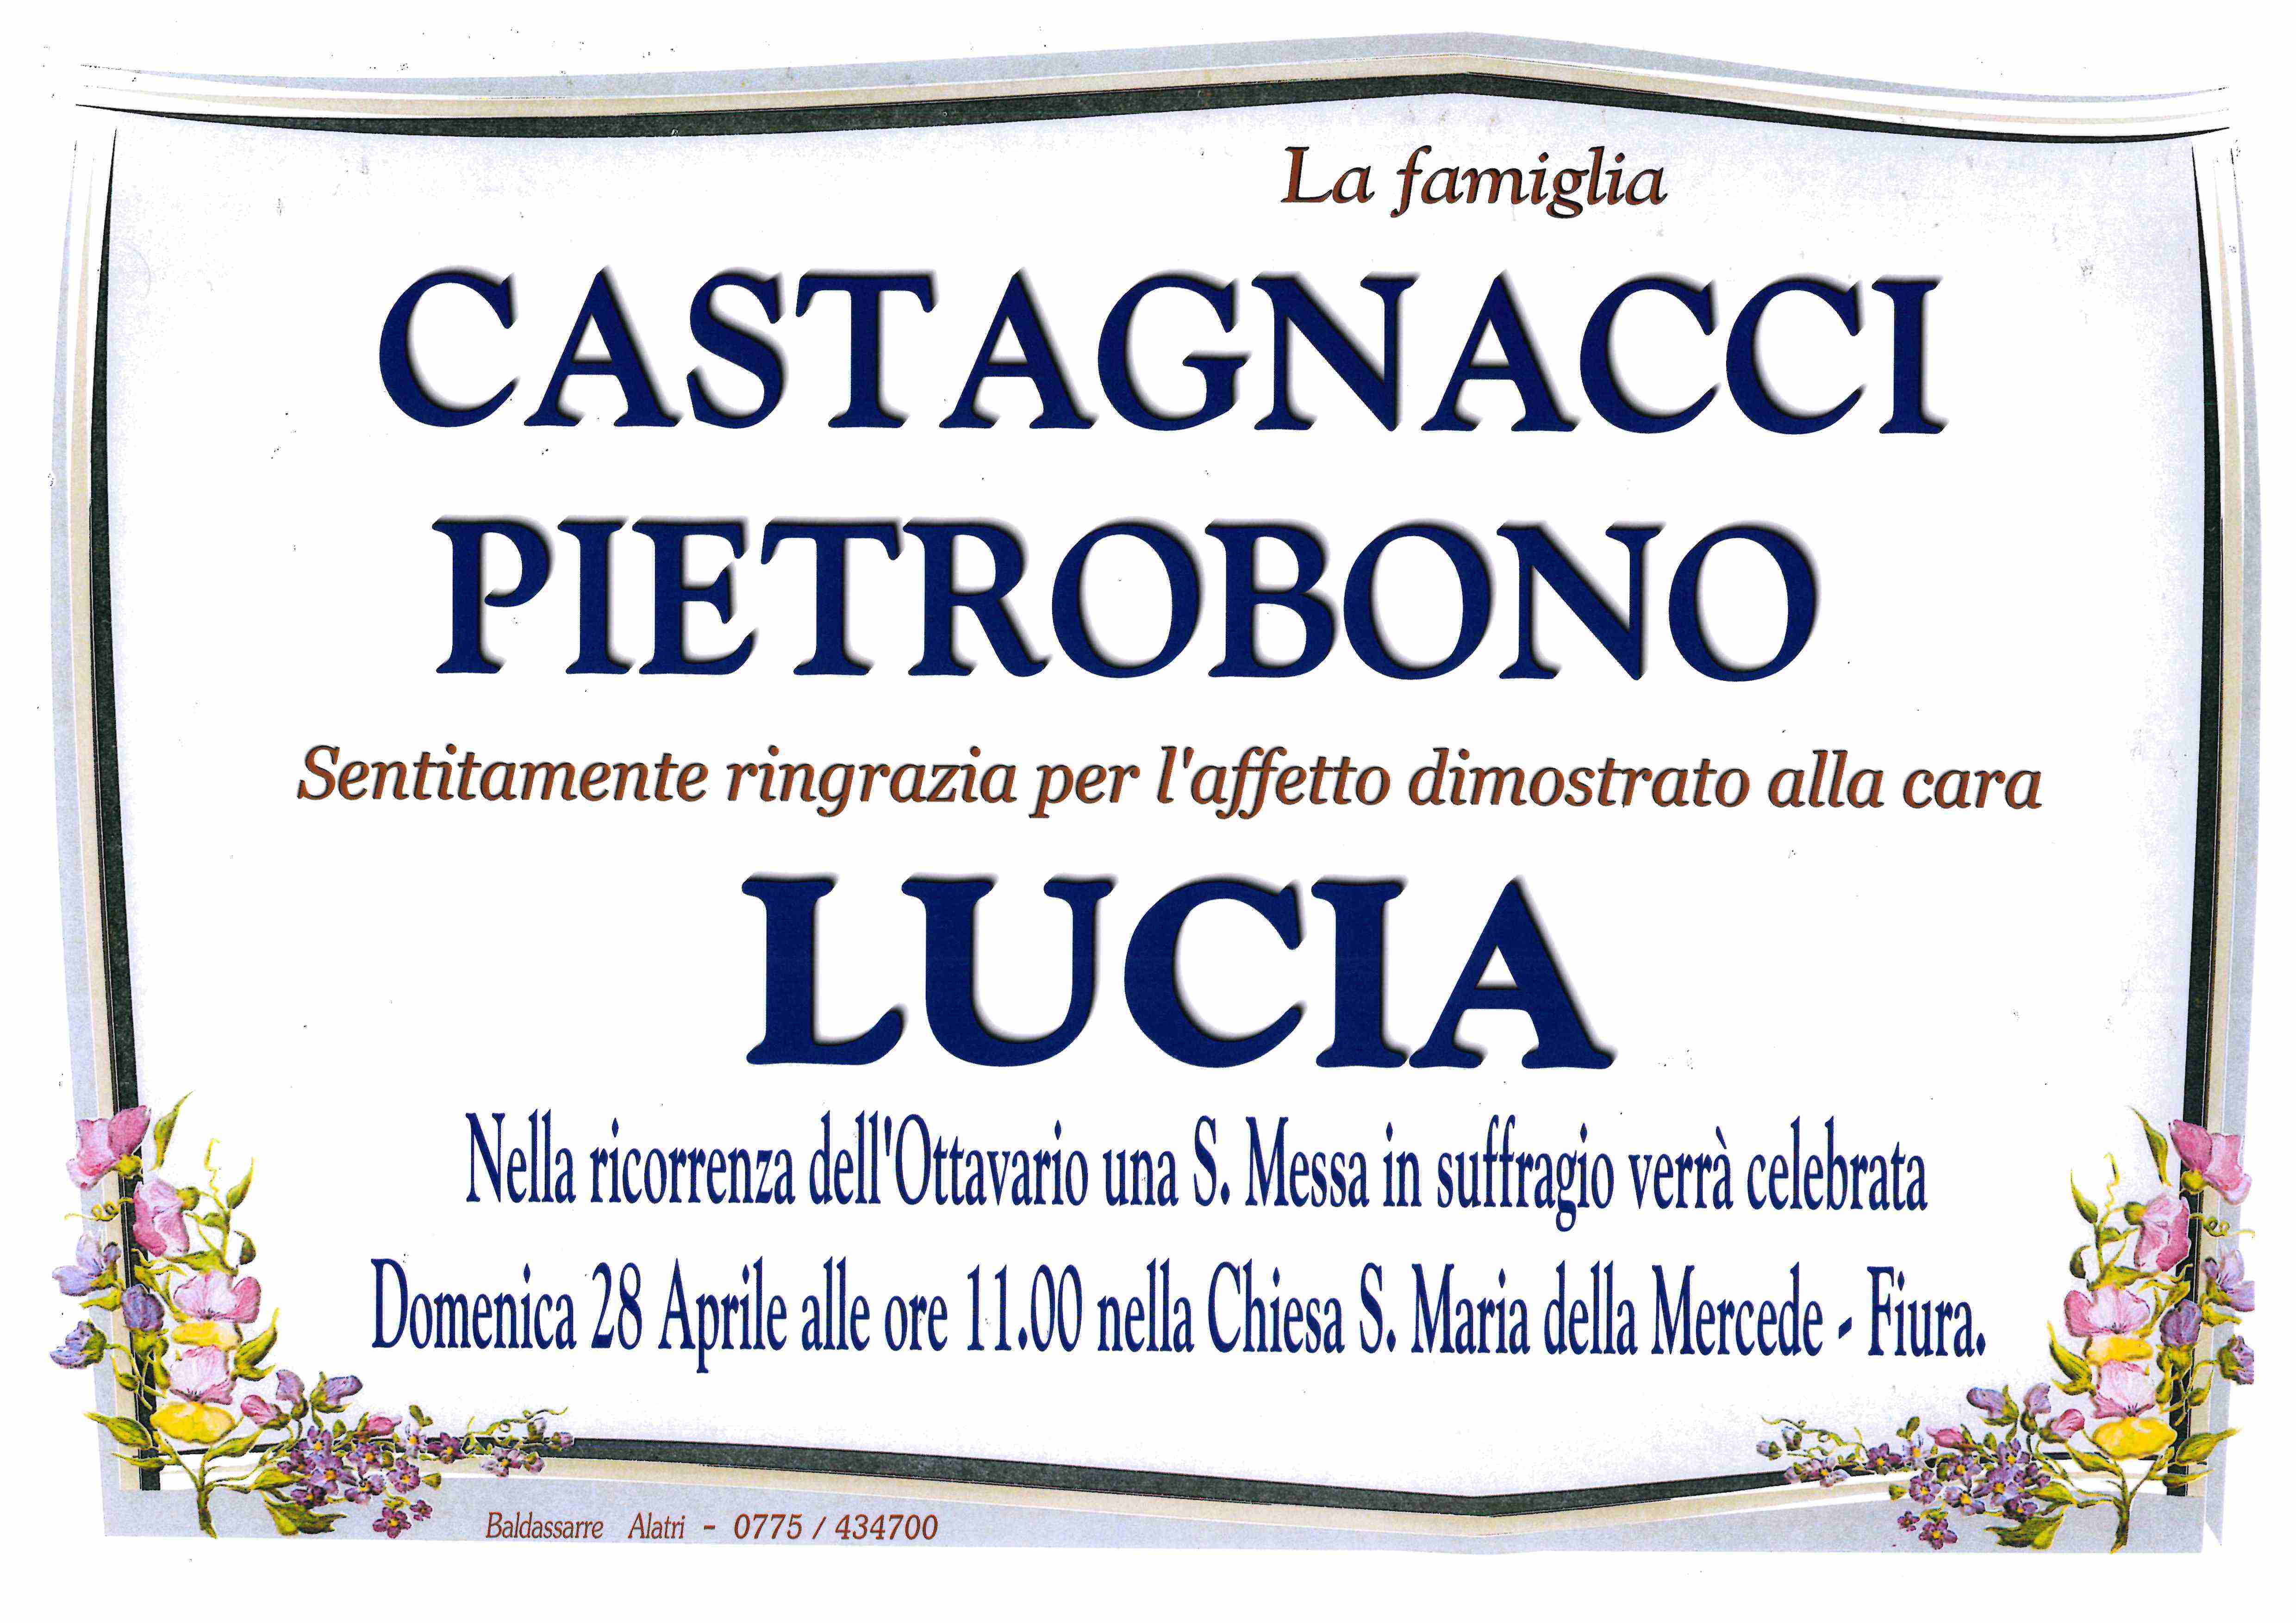 Lucia Pietrobono